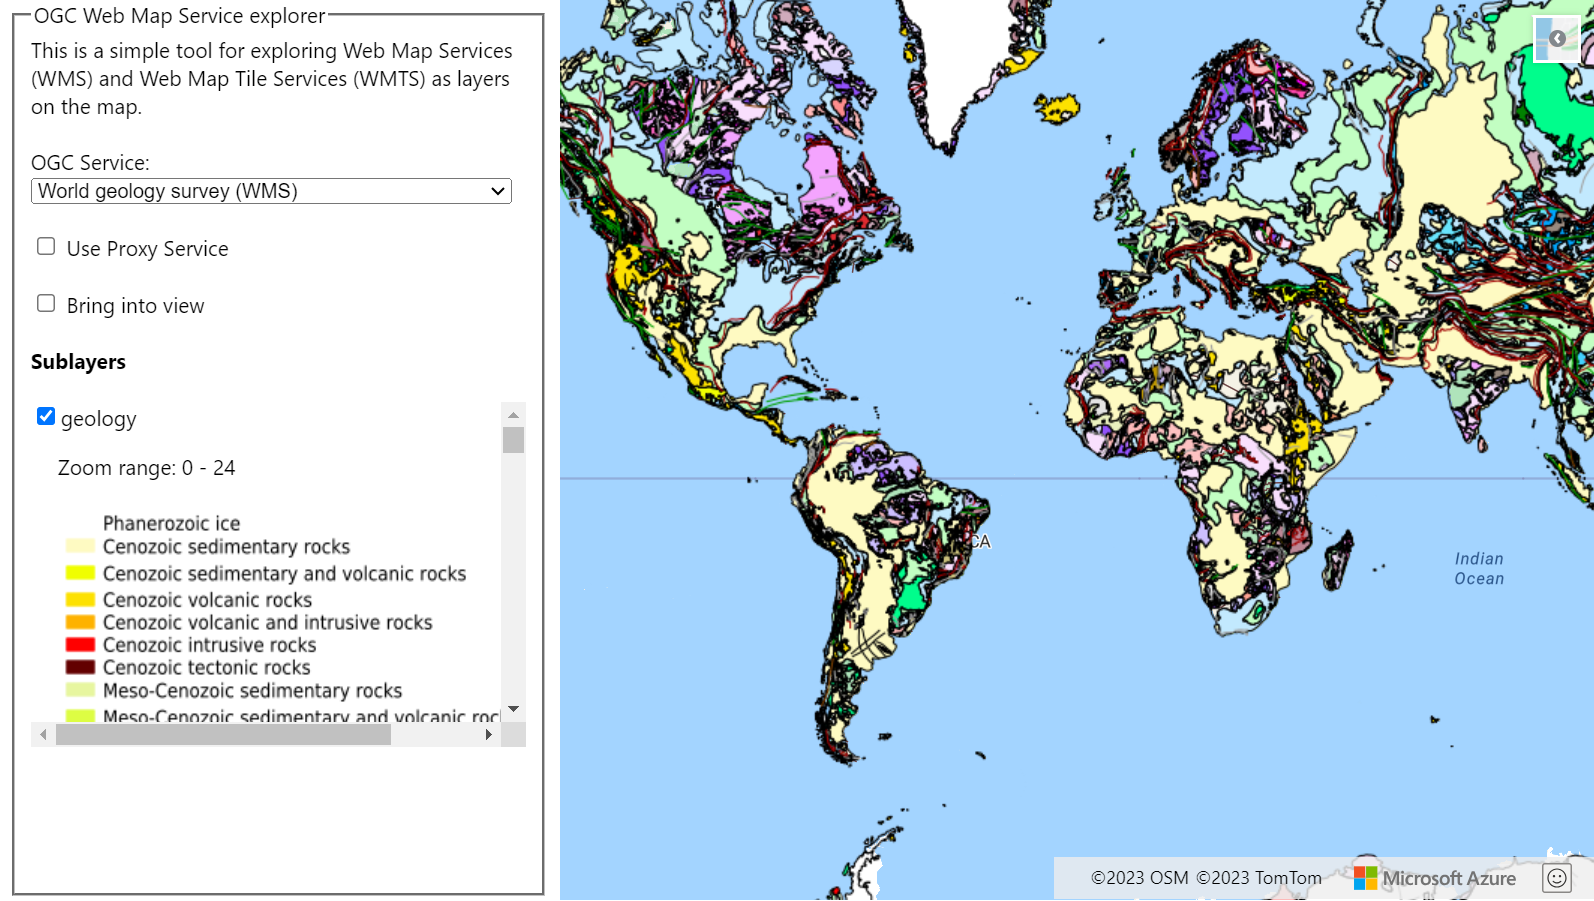 Une capture d’écran qui montre une carte avec un calque WMTS issue d’une étude géologique mondiale. Une liste déroulante montrant les services OGC qui peuvent être sélectionnés s’affiche sur la gauche de la carte.